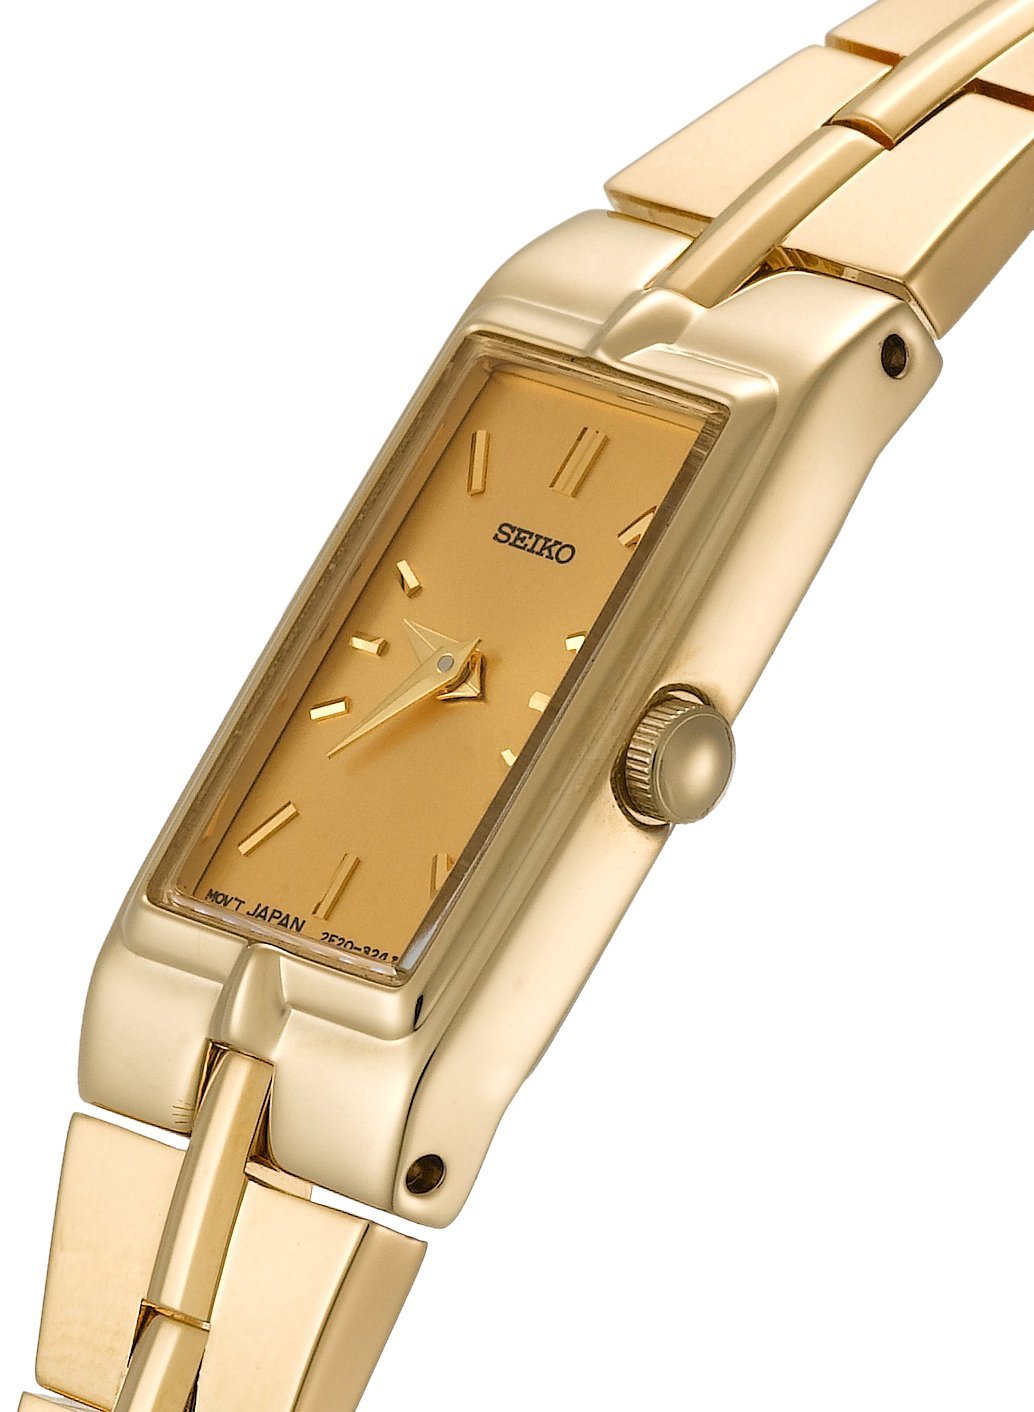 Đồng hồ nữ, hiệu Seiko, dây lụa vàng, trang sức si Nhật, size mặt 21.8mm cả  núm, 2hand, vintage HCM | Lazada.vn